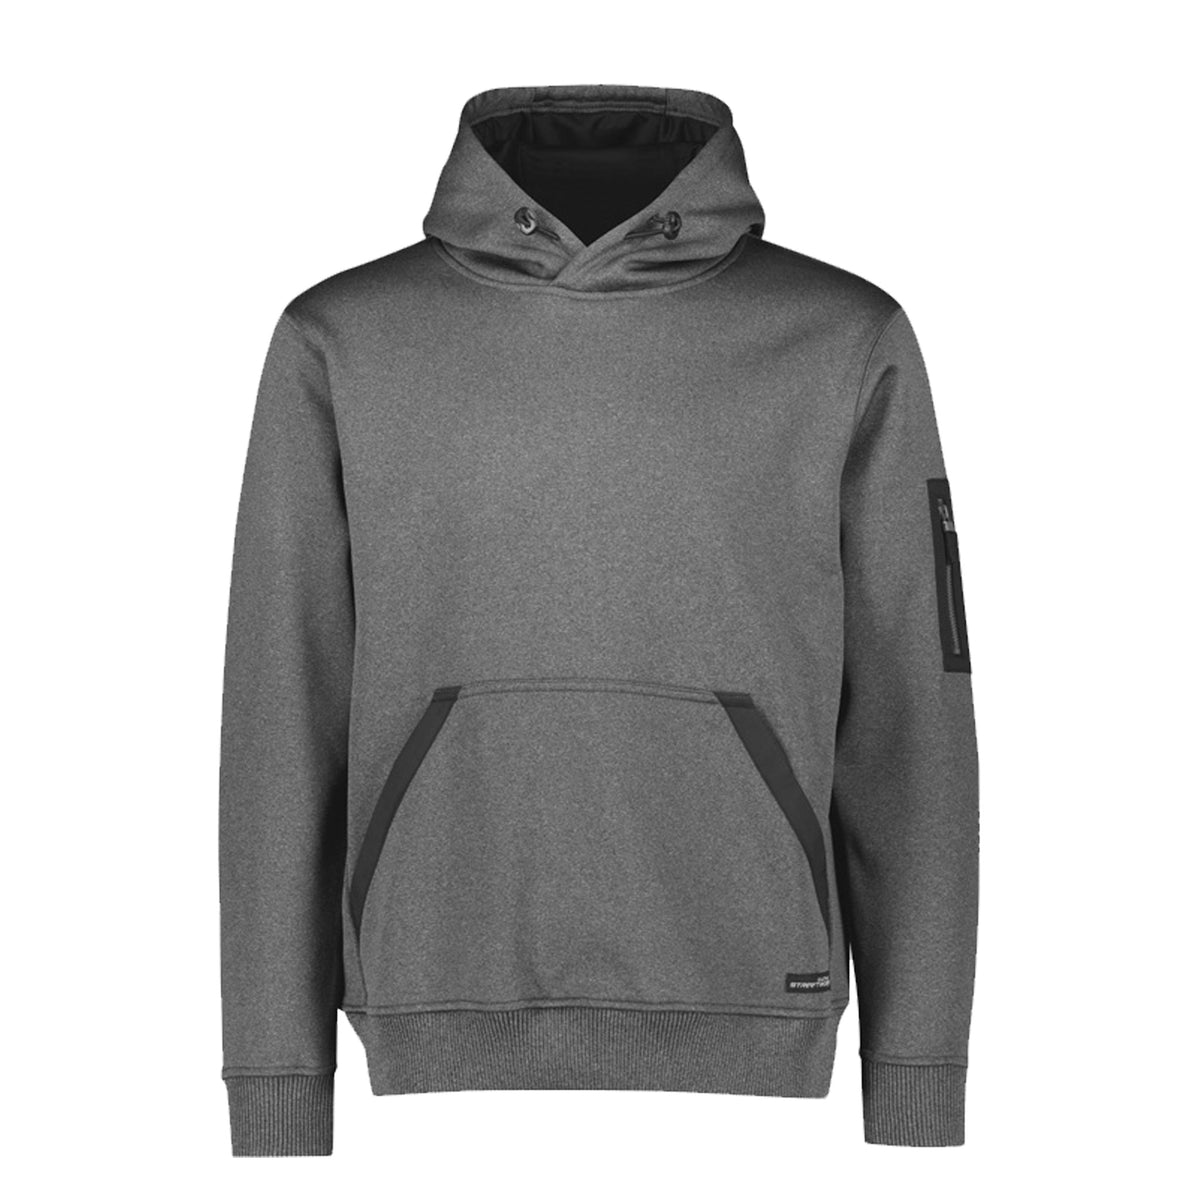 syzmik water resistant hoodie in grey